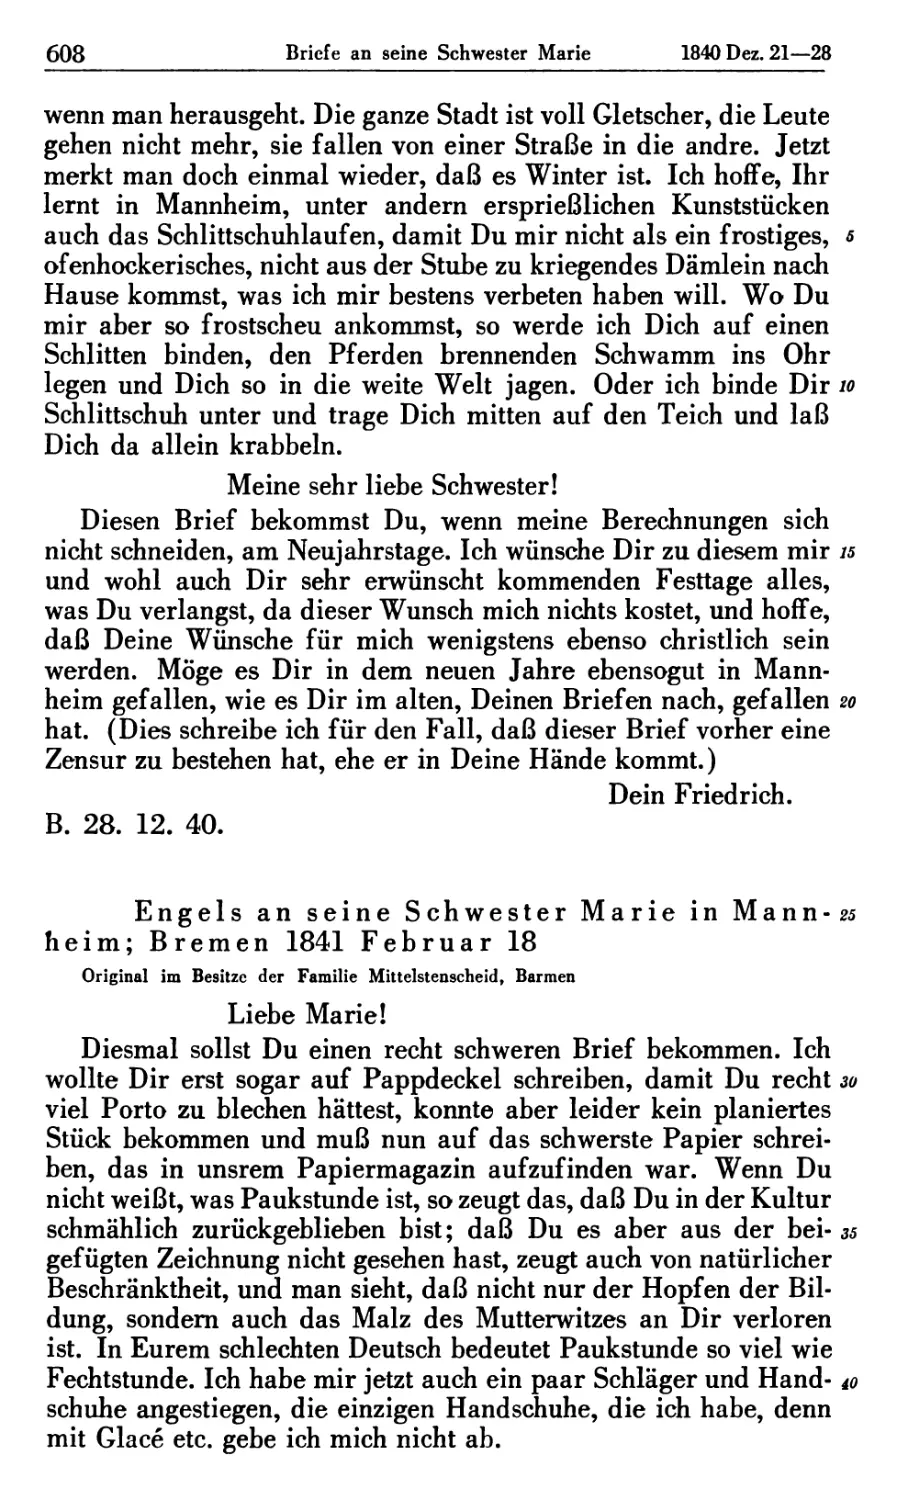 Engels an seine Schwester Marie in Mannheim; Bremen 1841 Februar 18